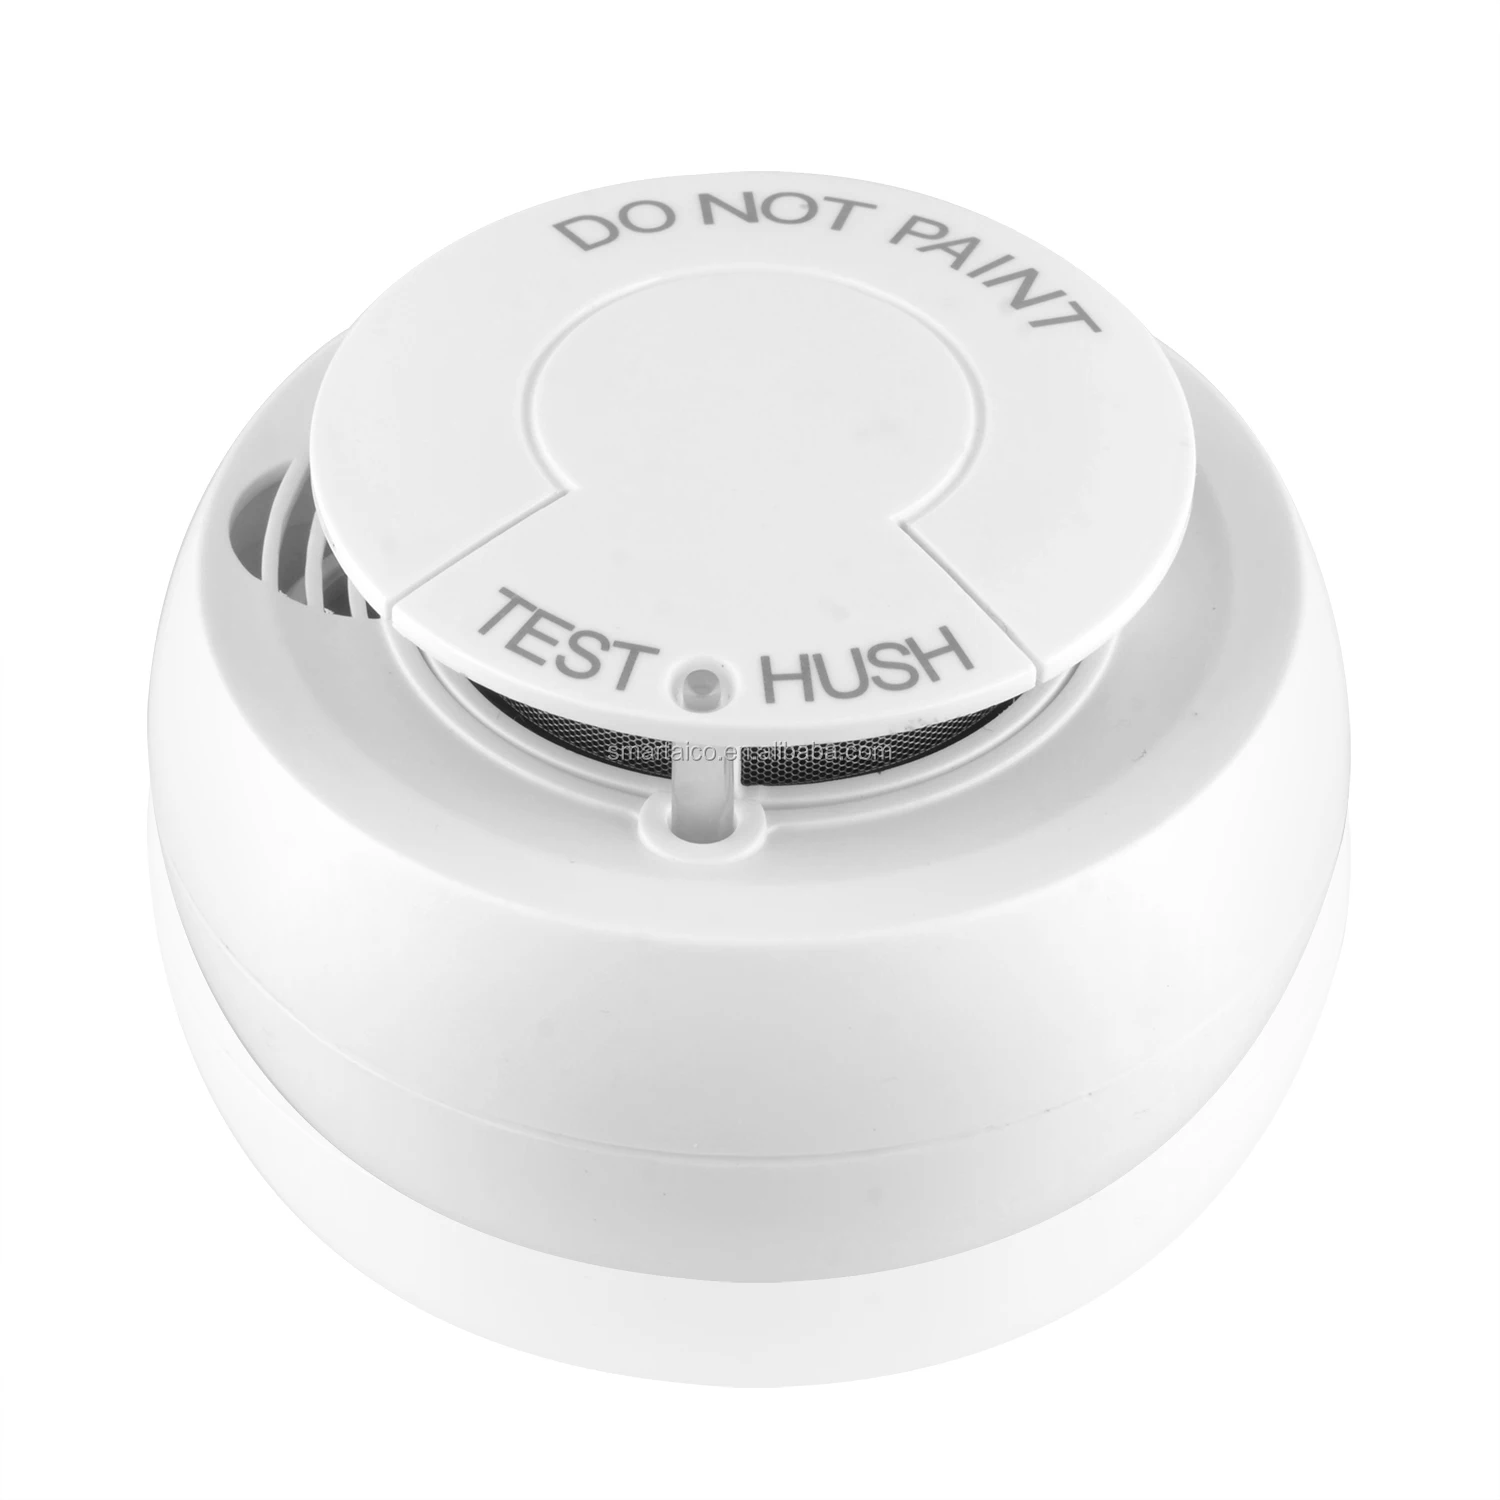 Дымовой датчик на батарейках. Hl Smoke sensor-01-WIFI беспроводной датчик дыма. Tuya WIFI Smoke Detector. Противопожарный датчик на батарейках. Пожарные датчики дымовые беспроводные автономные купить.